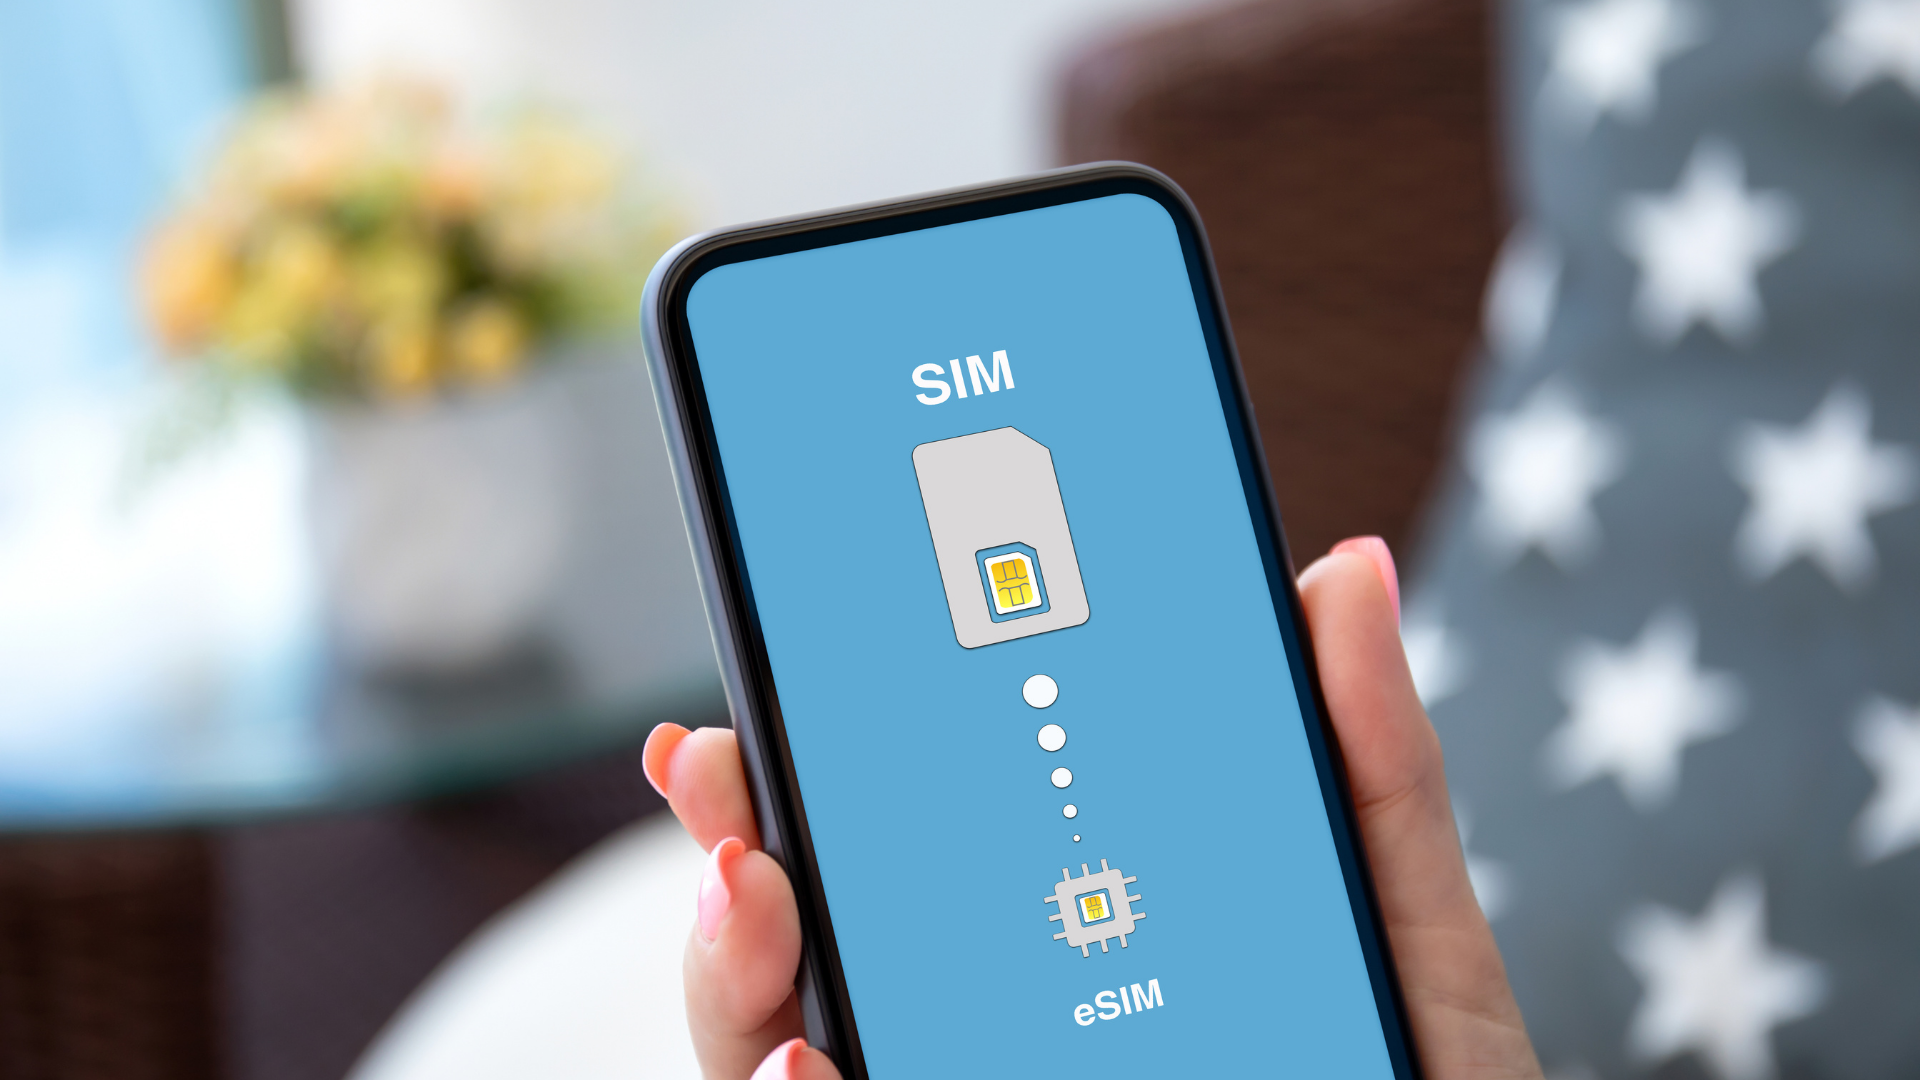 Cách cài và sử dụng eSIM trên iPhone, giúp bạn không cần mua SIM vật lý